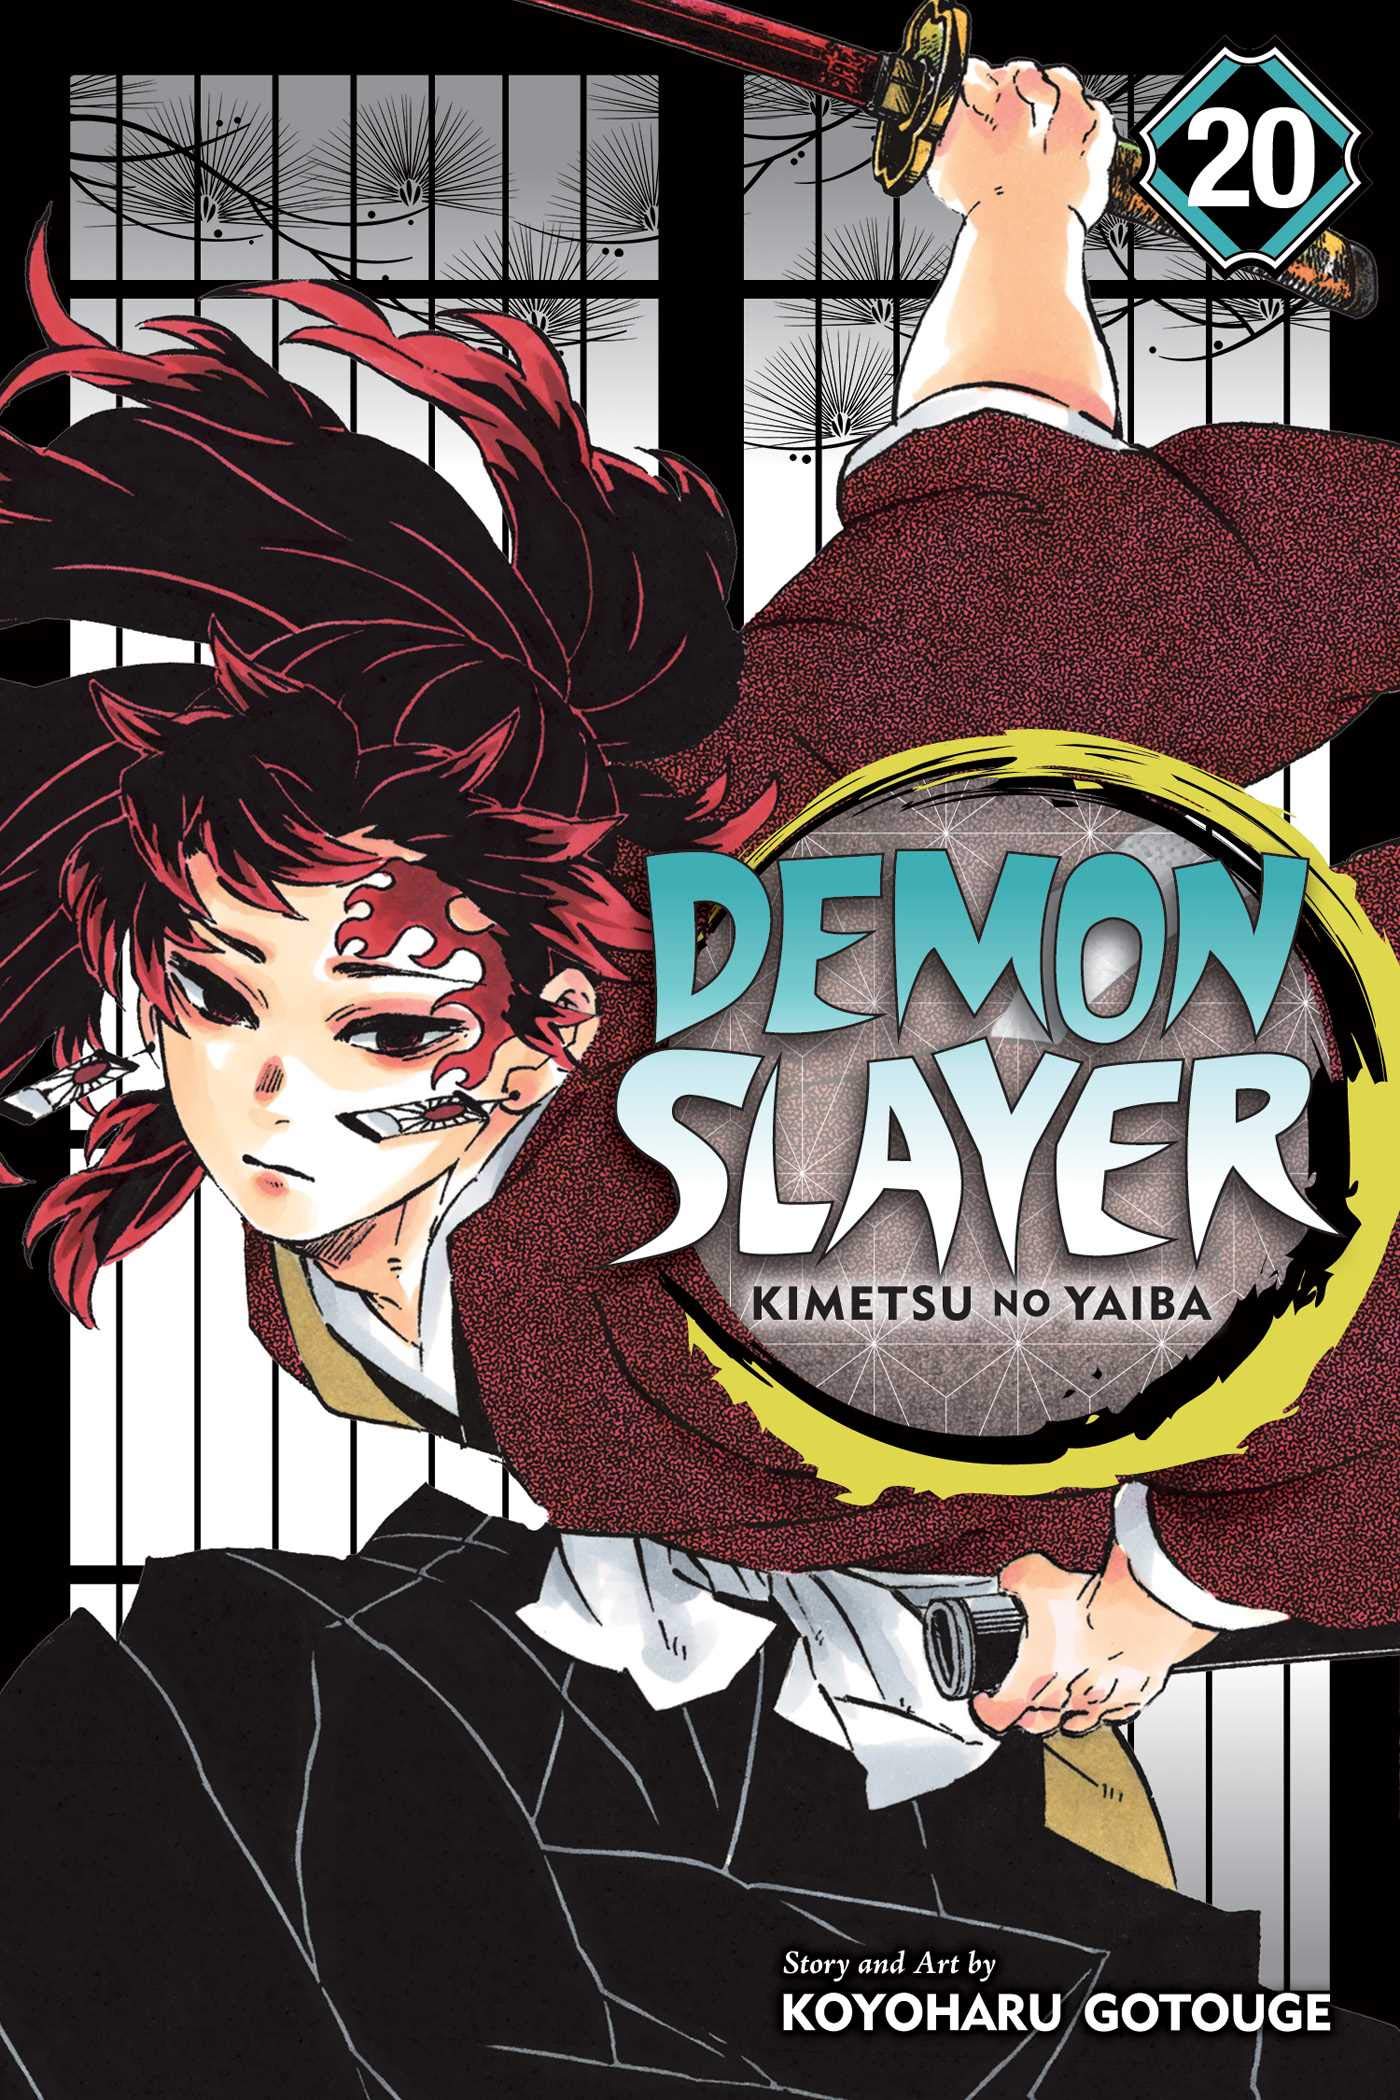 Demon Slayer: Kimetsu no Yaiba Vol. 20 | Koyoharu Gotouge